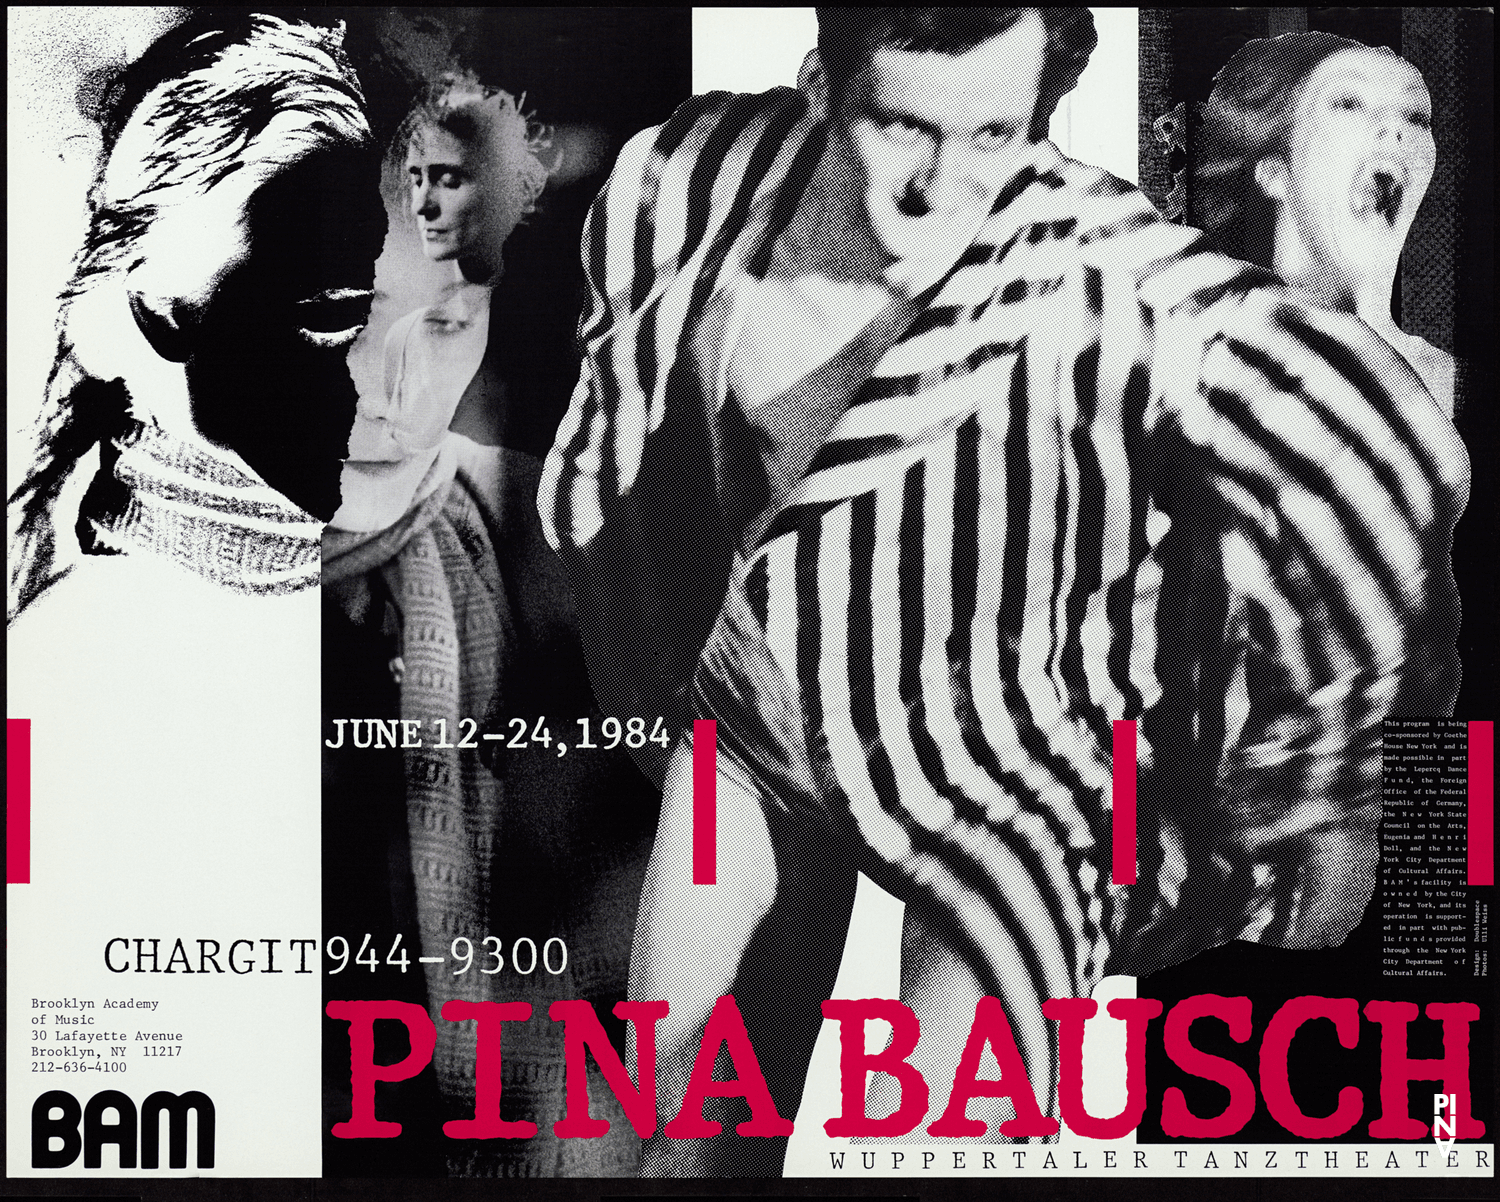 © Brooklyn Academy of Music (BAM), Pina Bausch Foundation, Foto: Ulli Weiss © Pina Bausch Foundation, Ulli Weiss